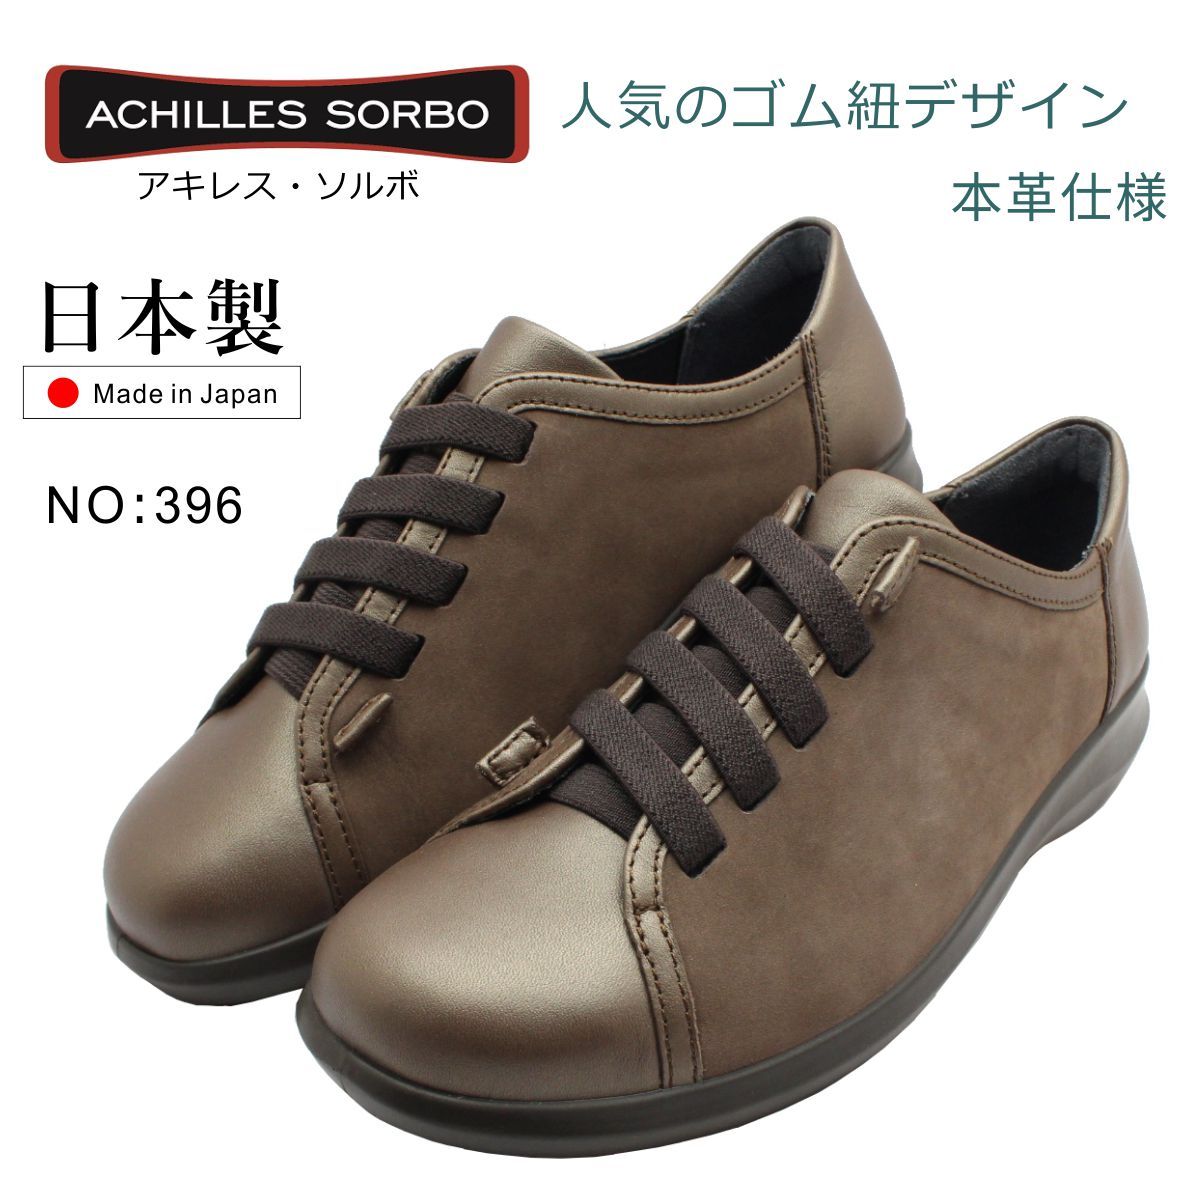 アキレス ソルボ レディース 396 ウォーキングシューズ ゴム紐 SRL 3960 SORBO 婦人靴 日本製 本革 ブロンズ  :sorbo396bz:ミッキー靴店 - 通販 - Yahoo!ショッピング